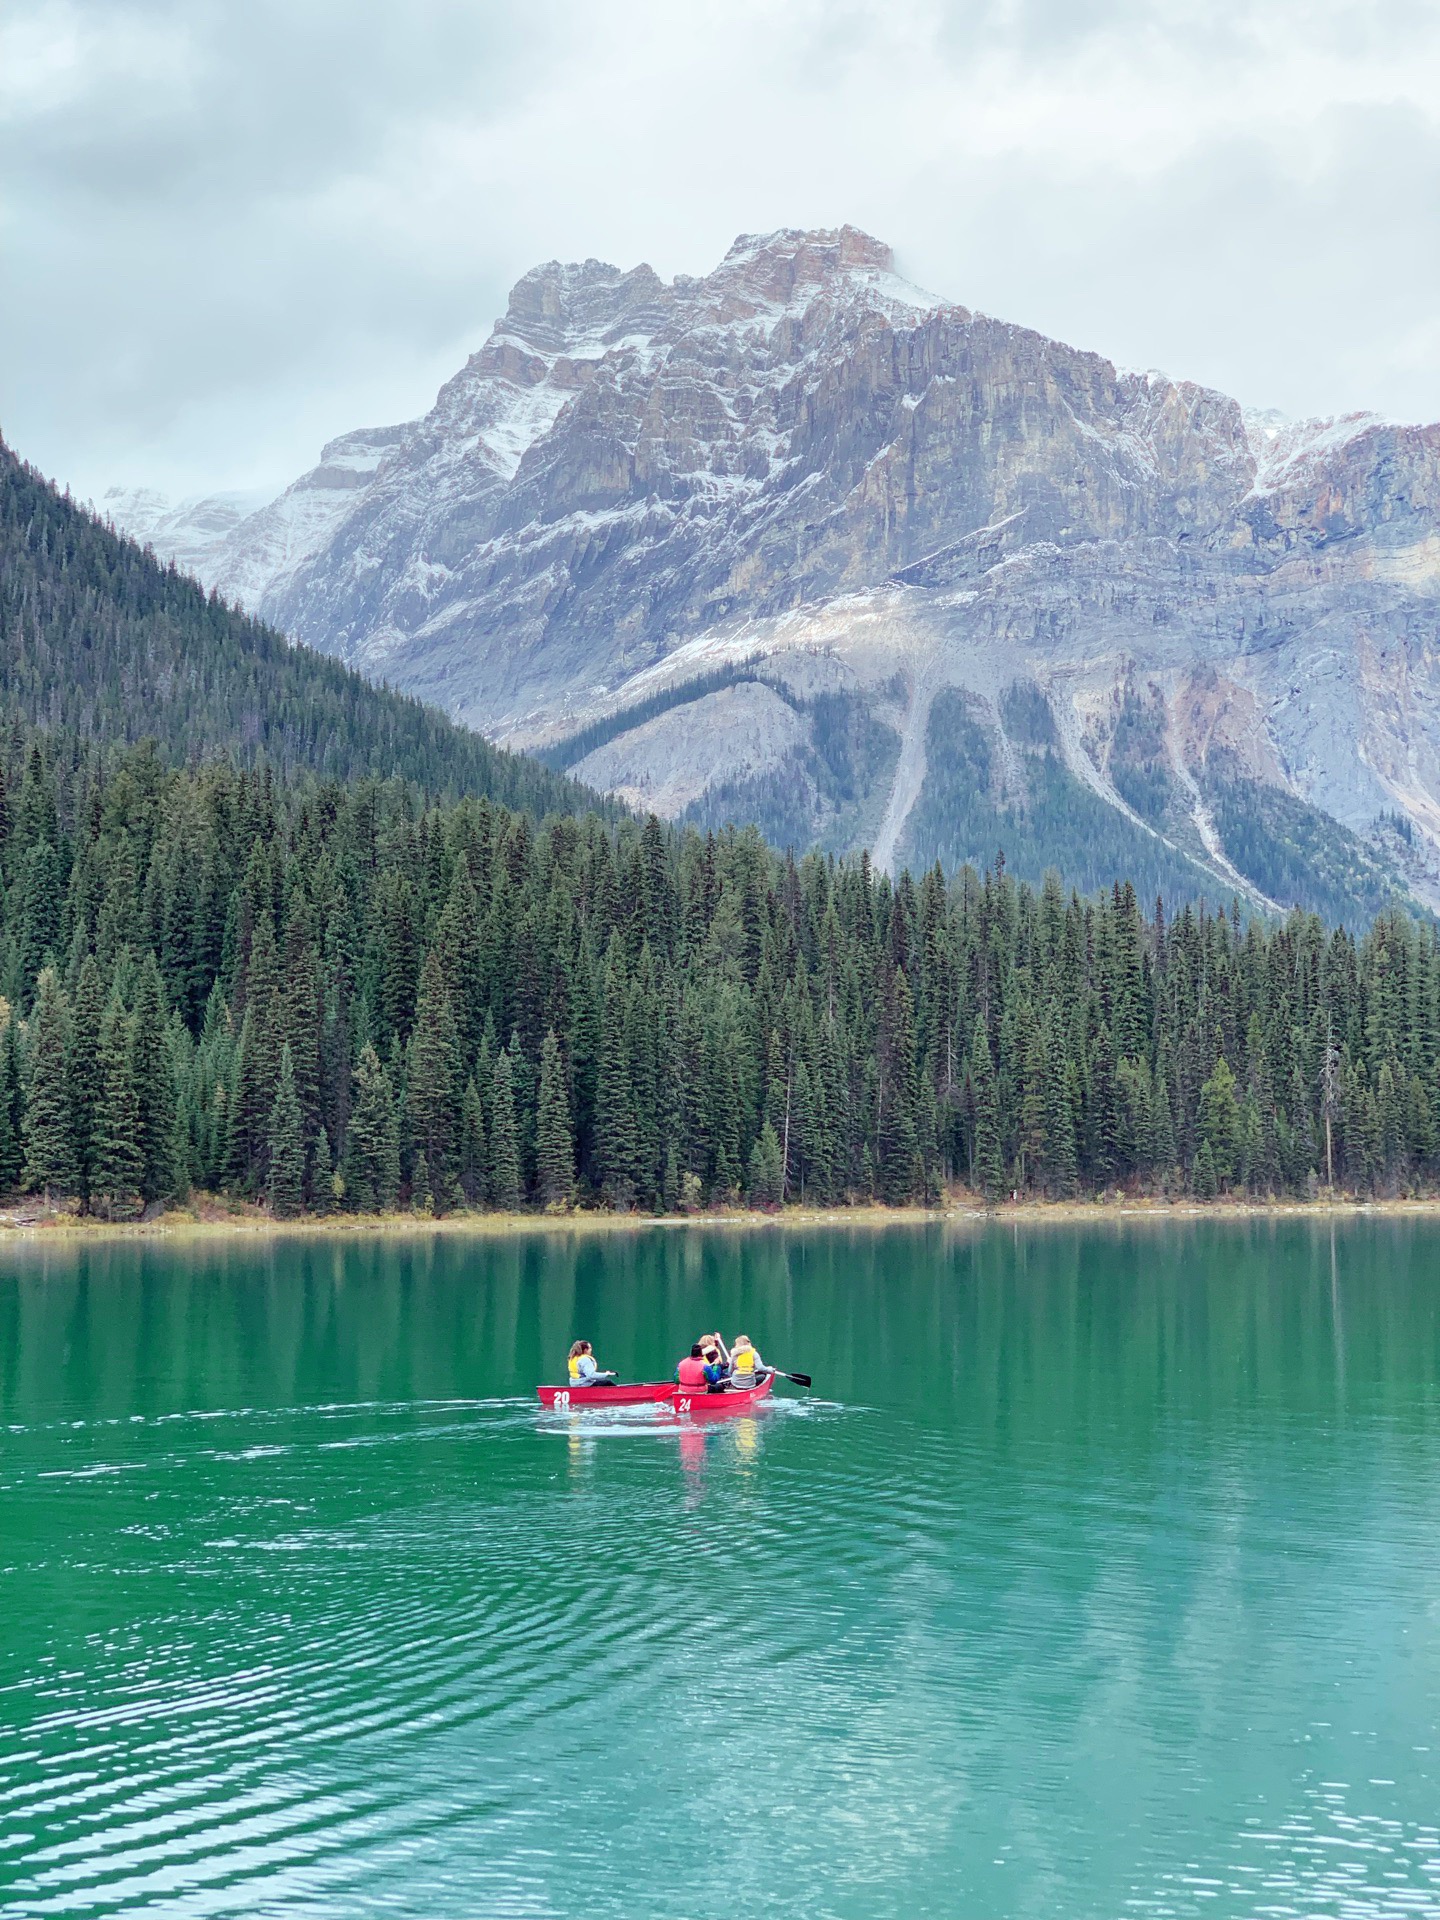 落基山下之翡翠剔透美—游加拿大幽鹤国家公园翡翠湖     翡翠湖emerald lake作为加拿大西